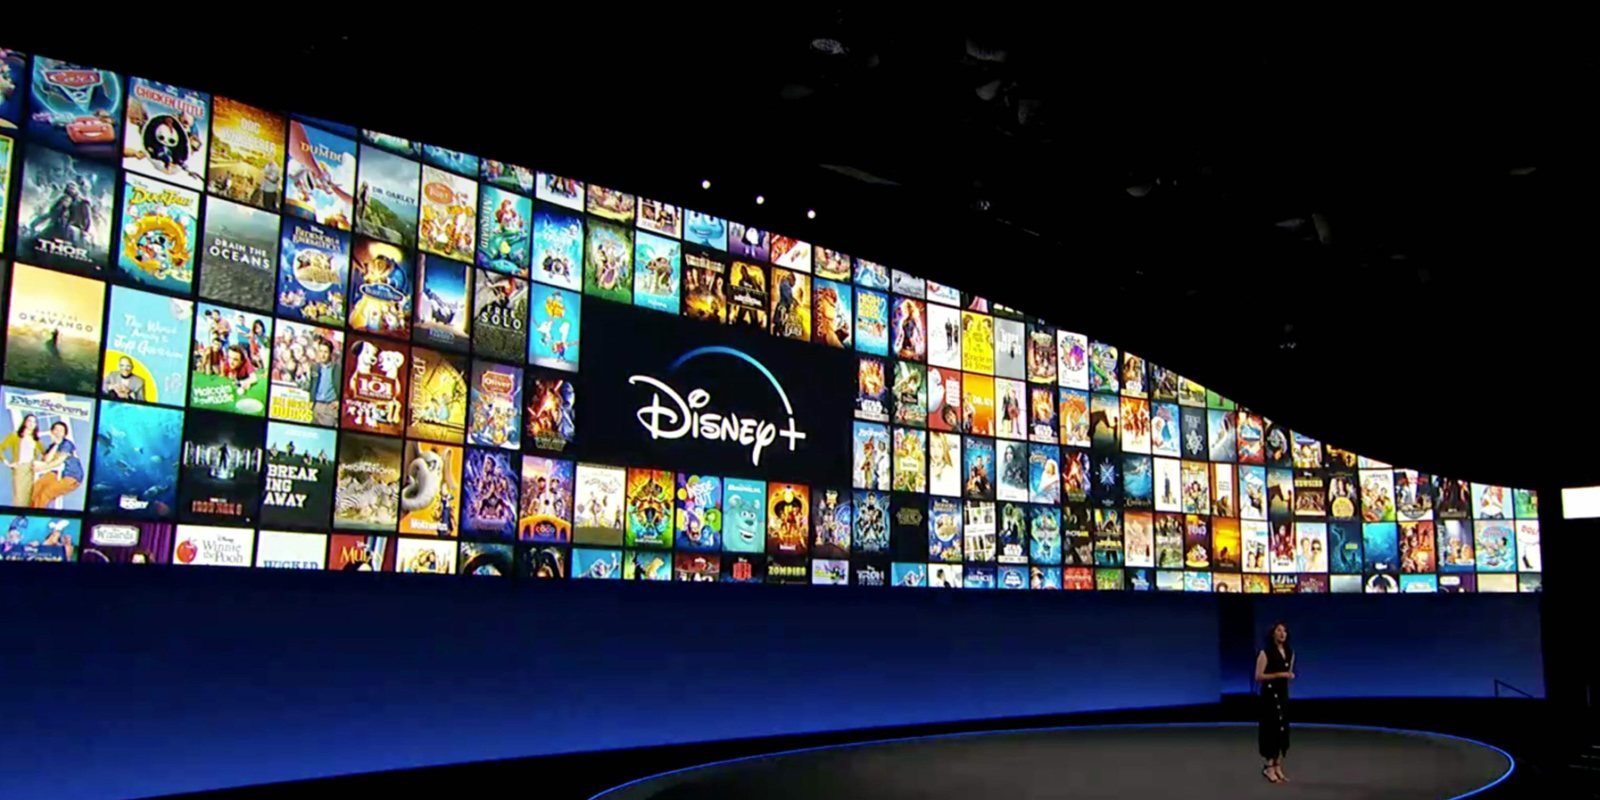 Disney+ crea un hilo en Twitter con todo el catálogo que tendrá de lanzamiento